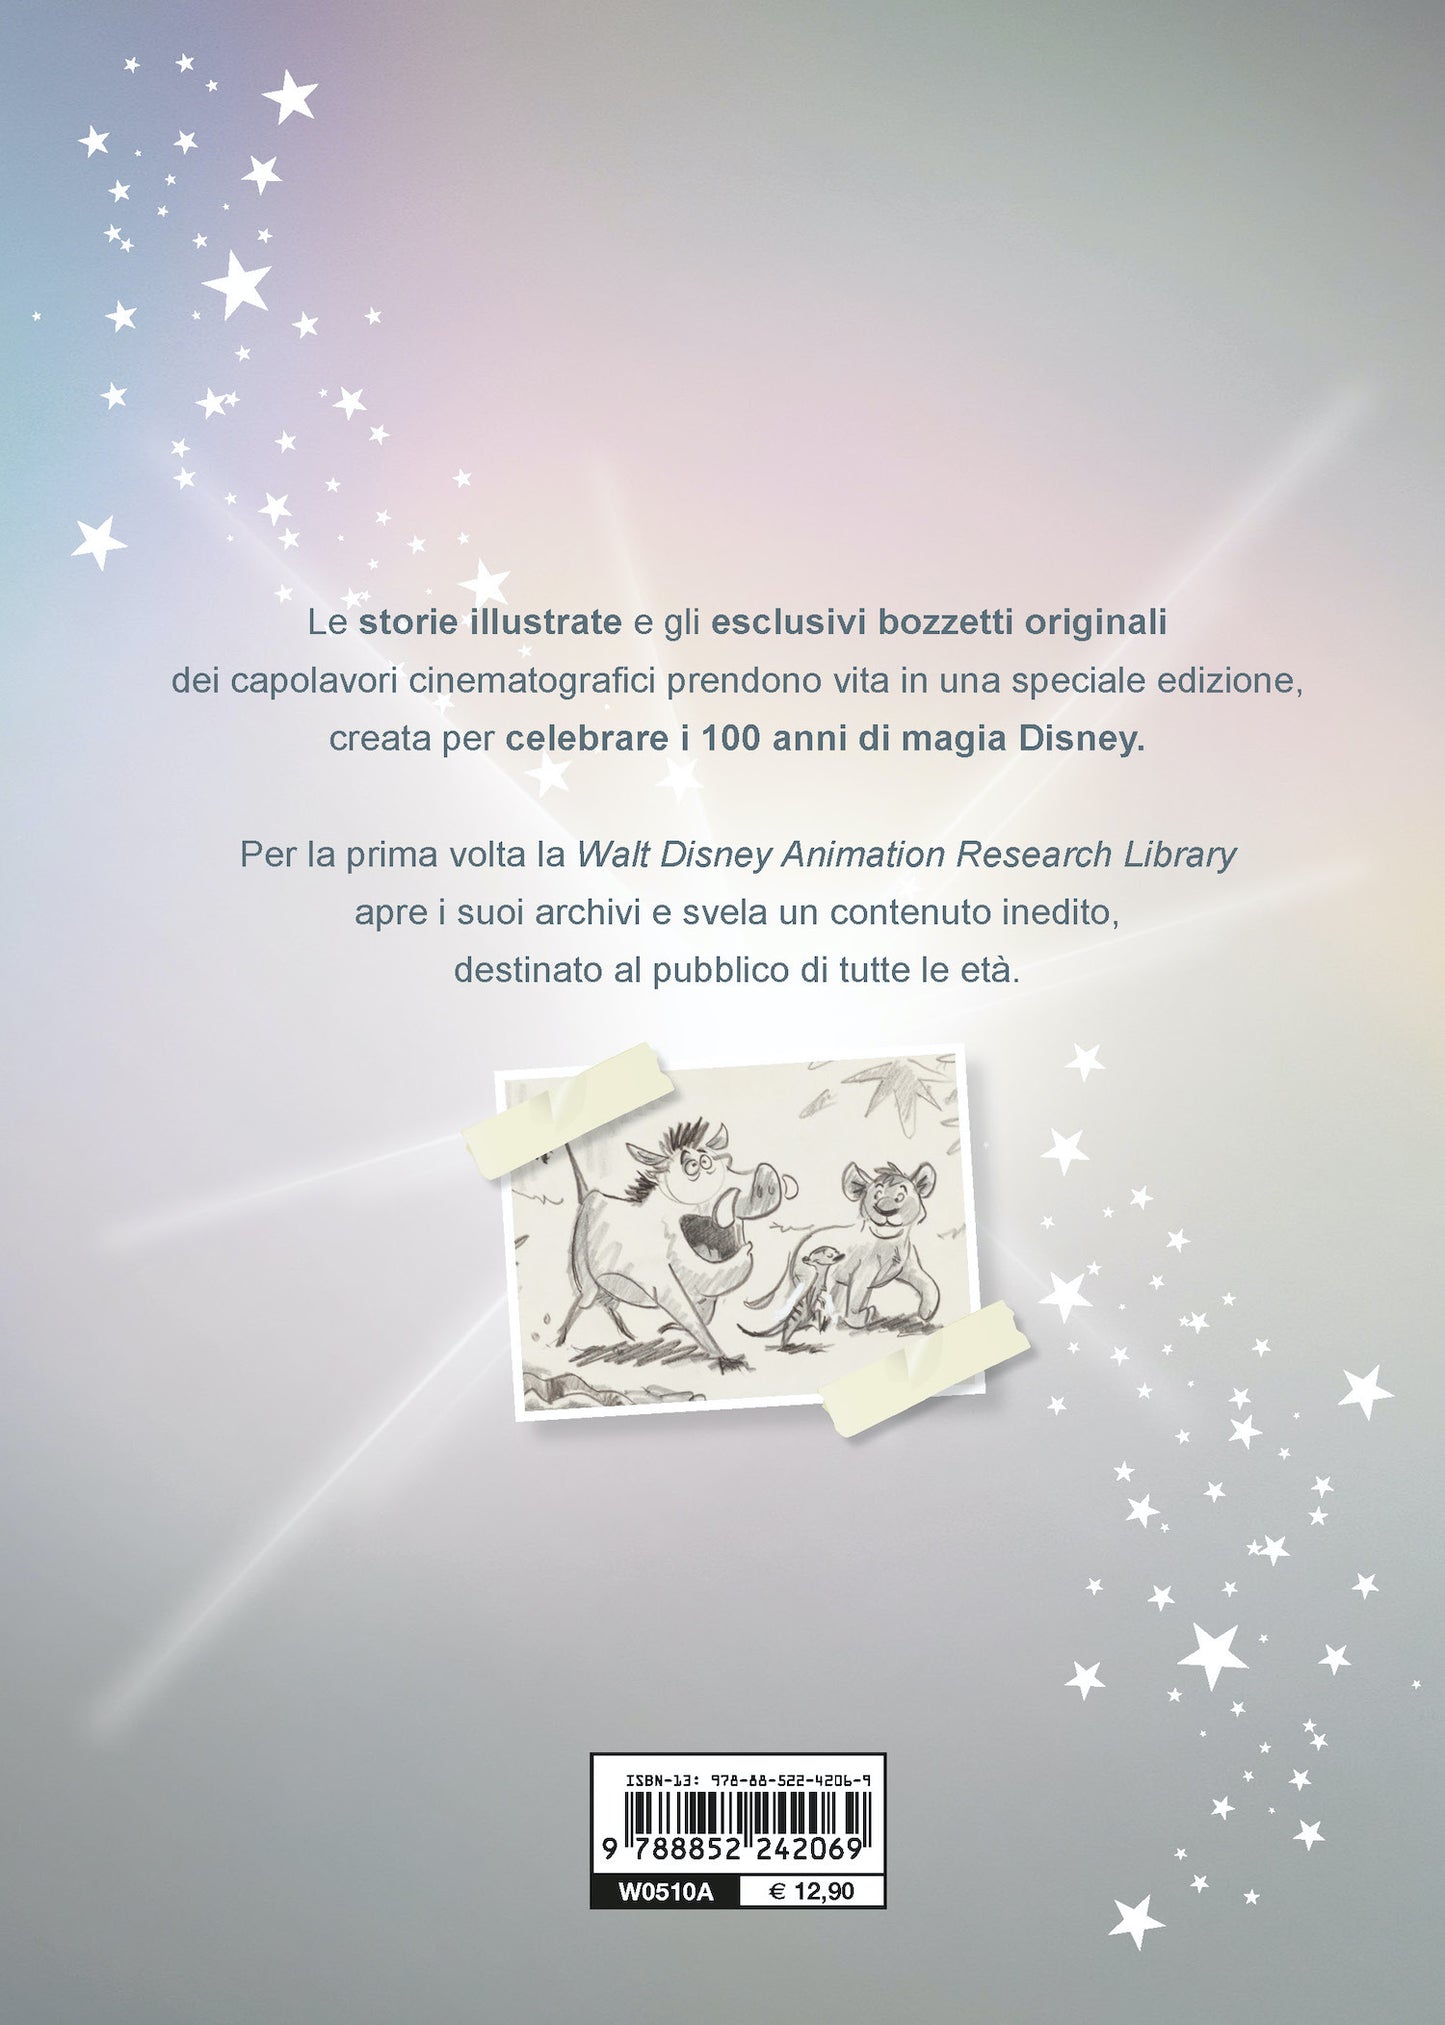 100 anni di Disney: libri ed edizioni speciali